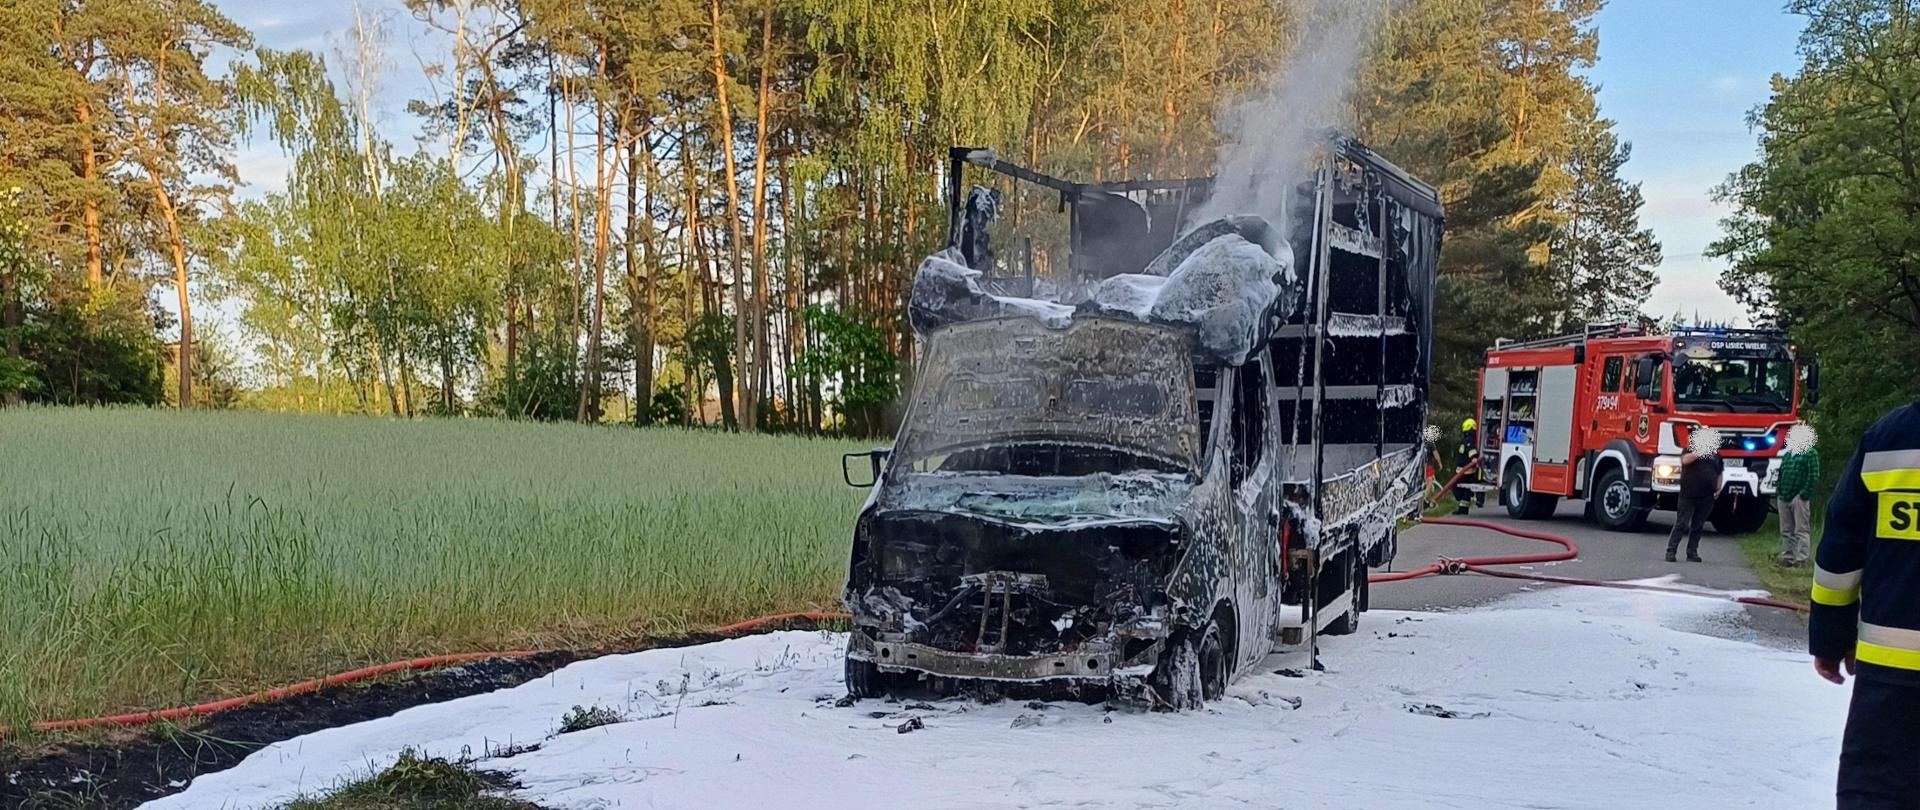 Zdjęcia przedstawia spalony samochód dostawczy marki Renault. Nad samochodem unosi się dym. Z tyłu widać samochód strażacki. Pod samochodem oraz na jezdni widać pianę gaśniczą oraz dwie linie wężowe. 